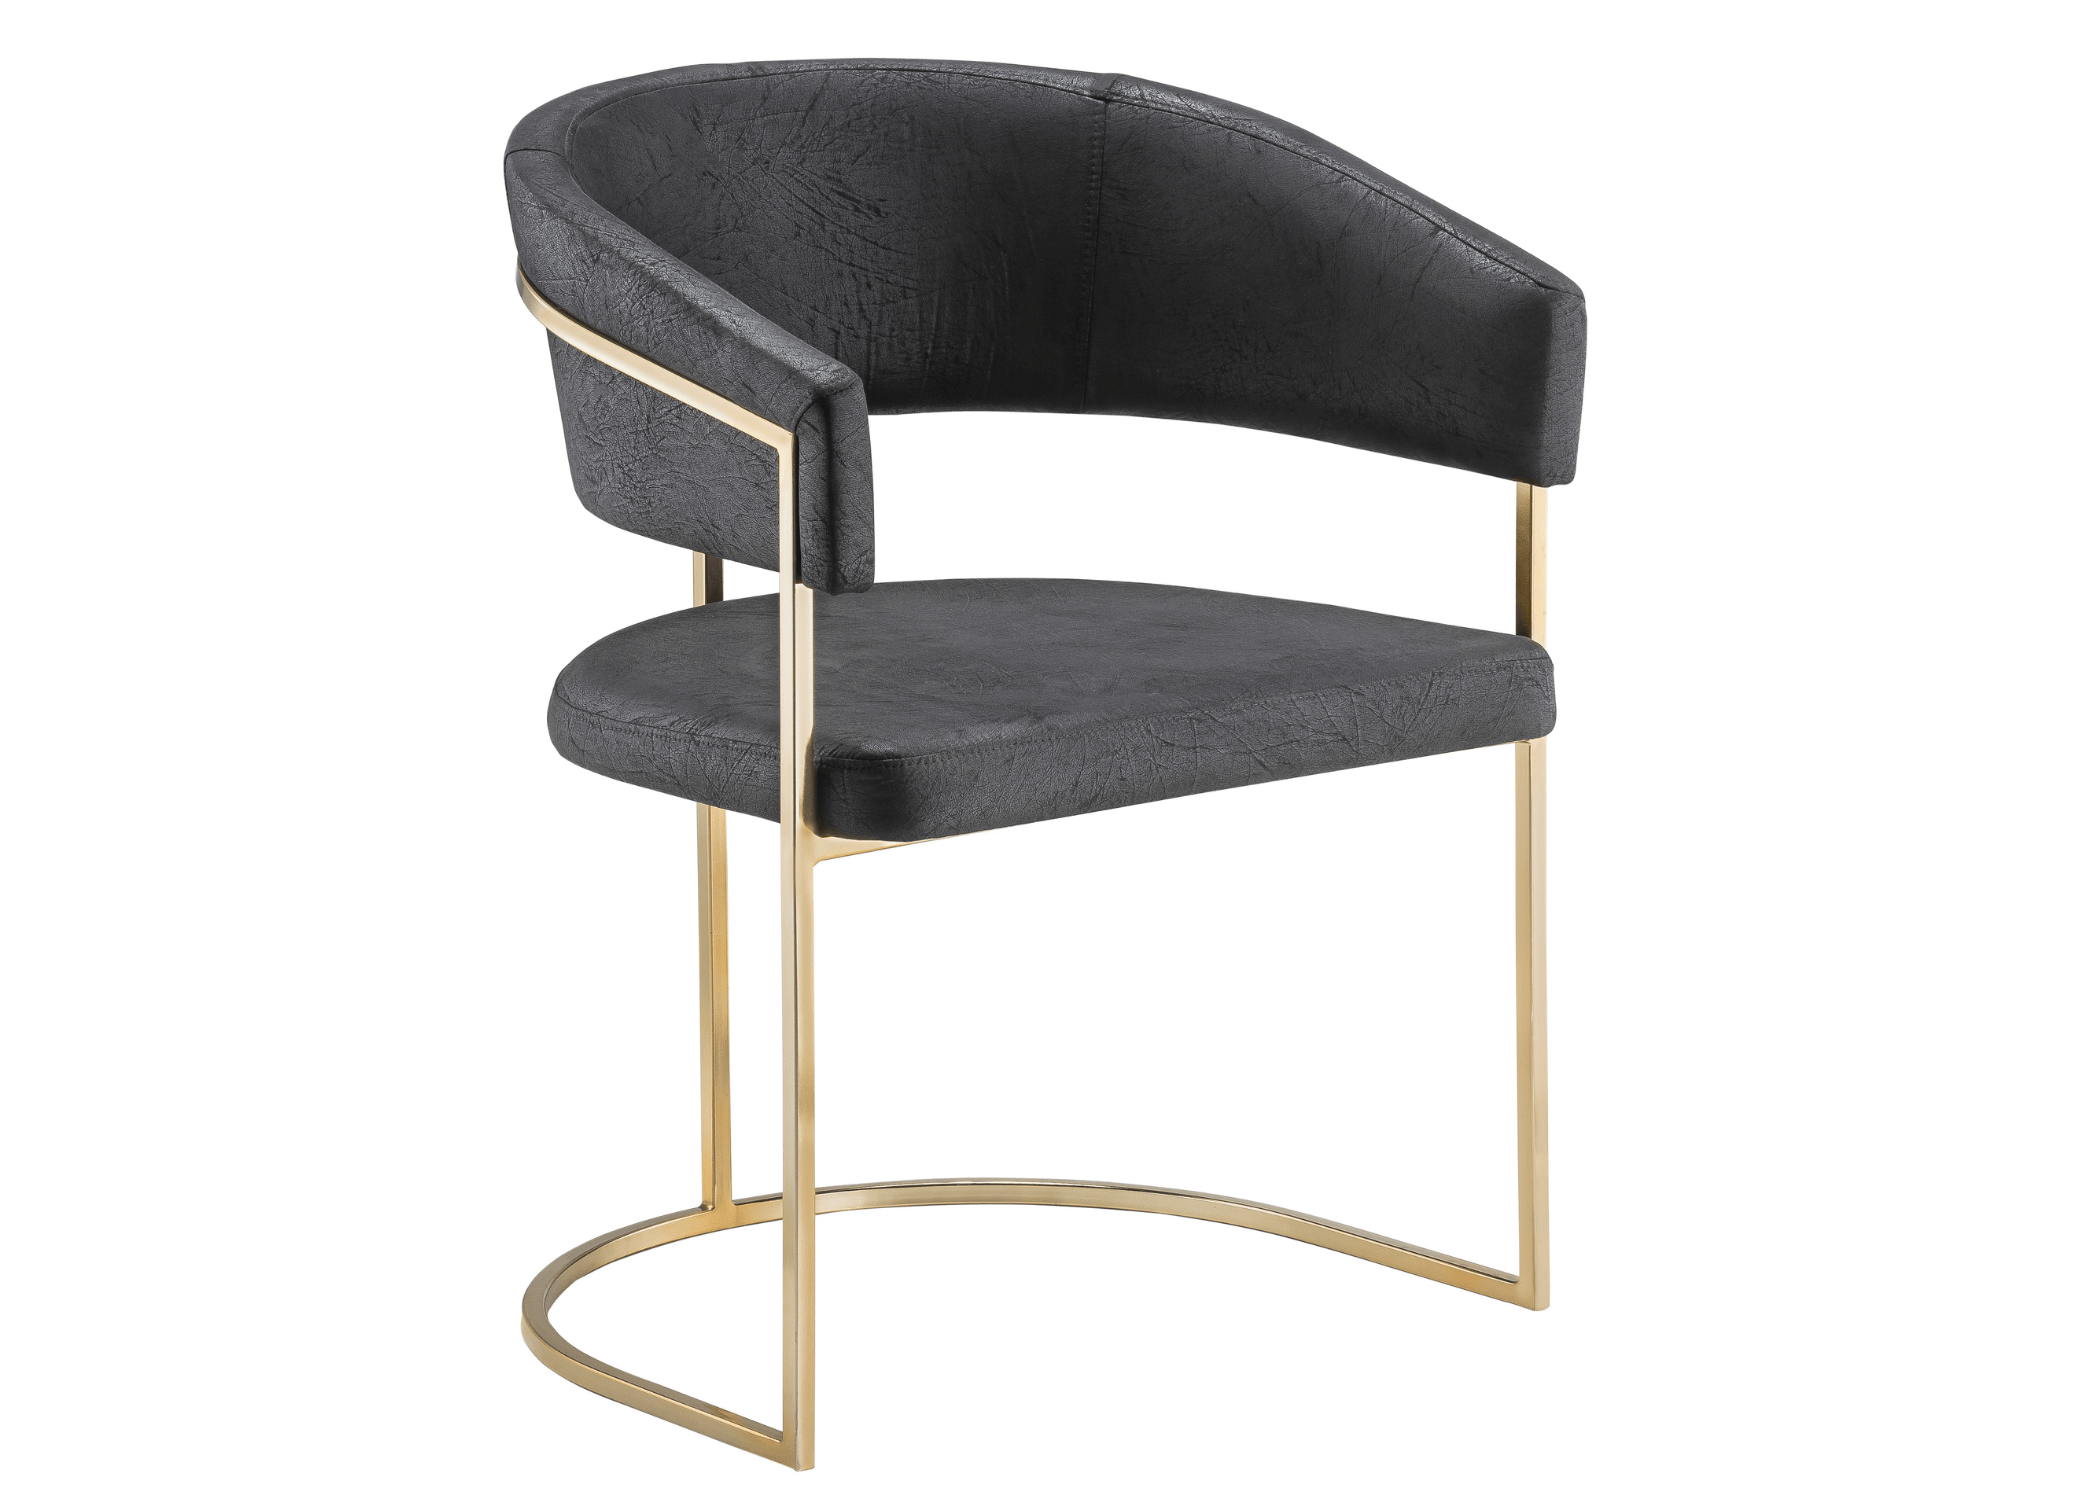 Linhas suaves e curvas elegantes: elegante atemporal na Cadeira Maria.